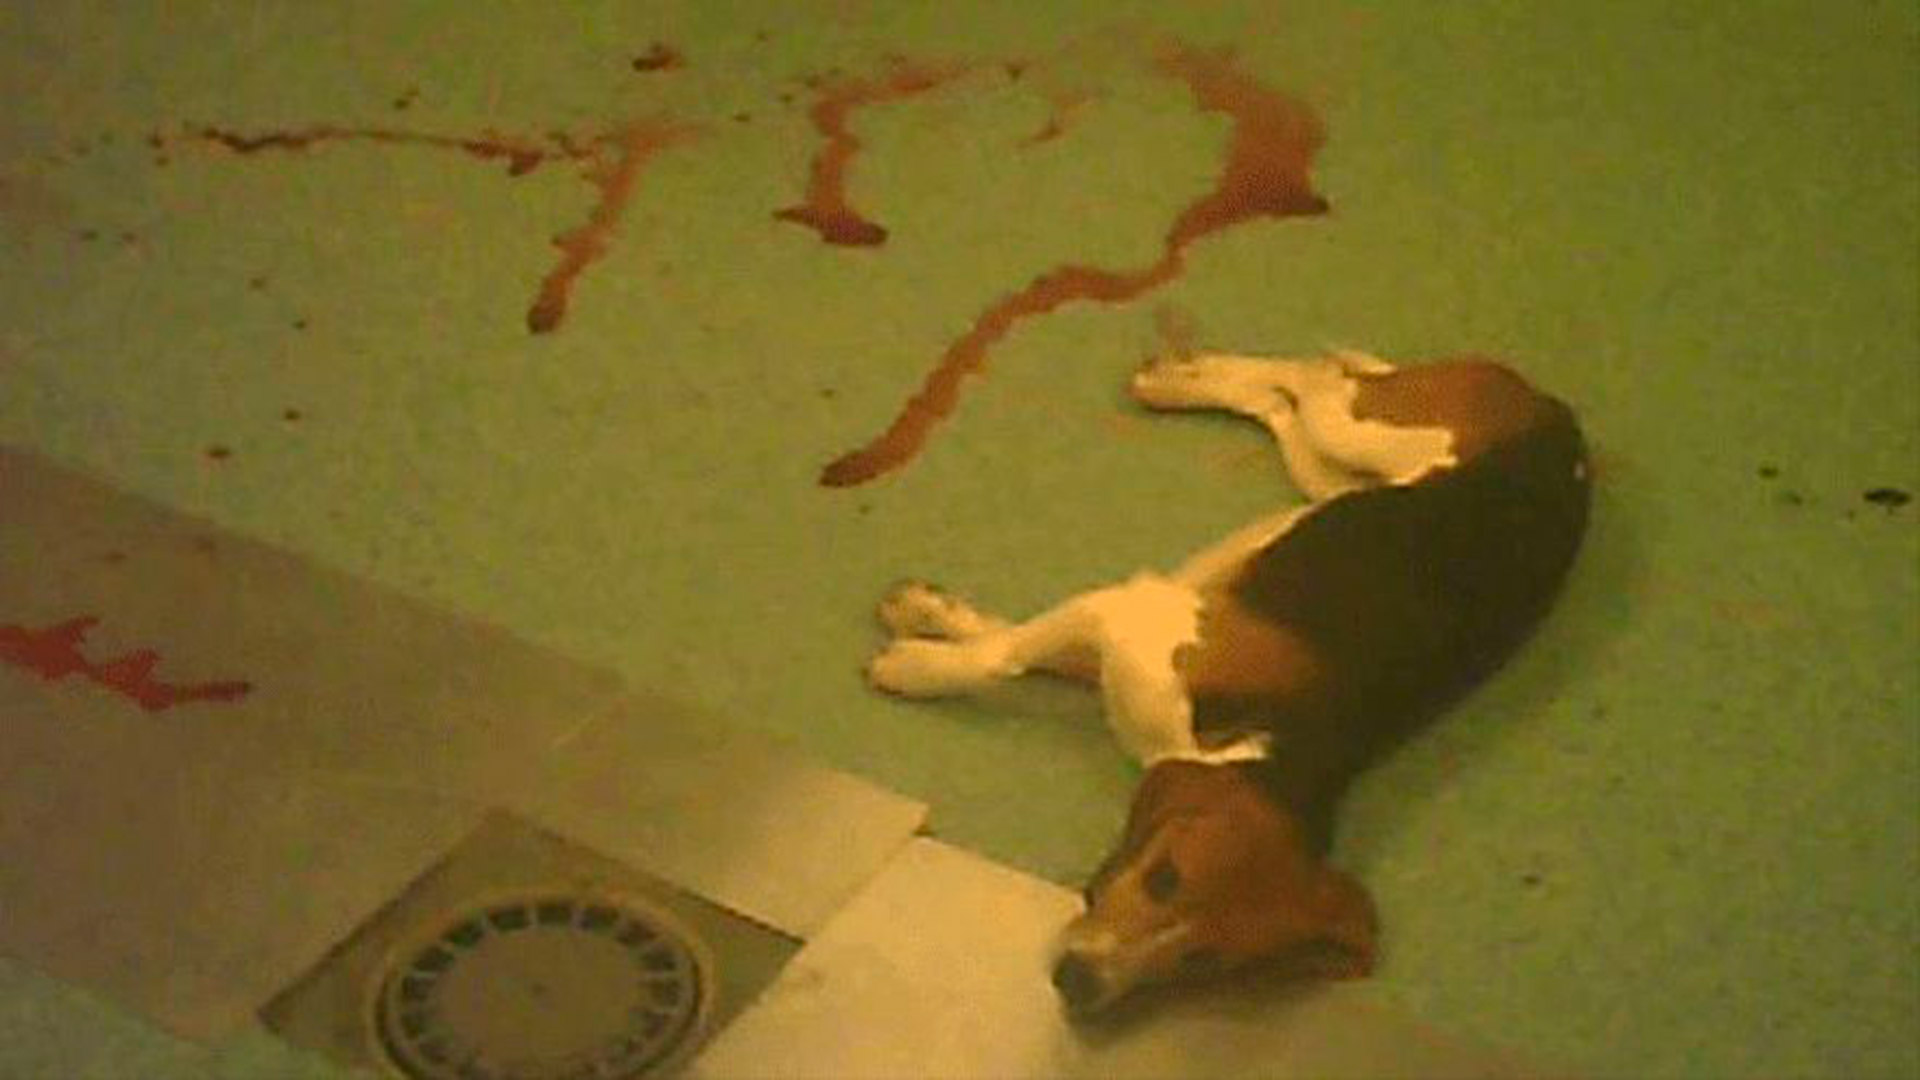 Un cachorro beagle en Vivotecnia: en abril del año pasado se difundieron imágenes estremecedoras de prácticas crueles en el laboratorio madrileño (Cruelty Free Internacional)